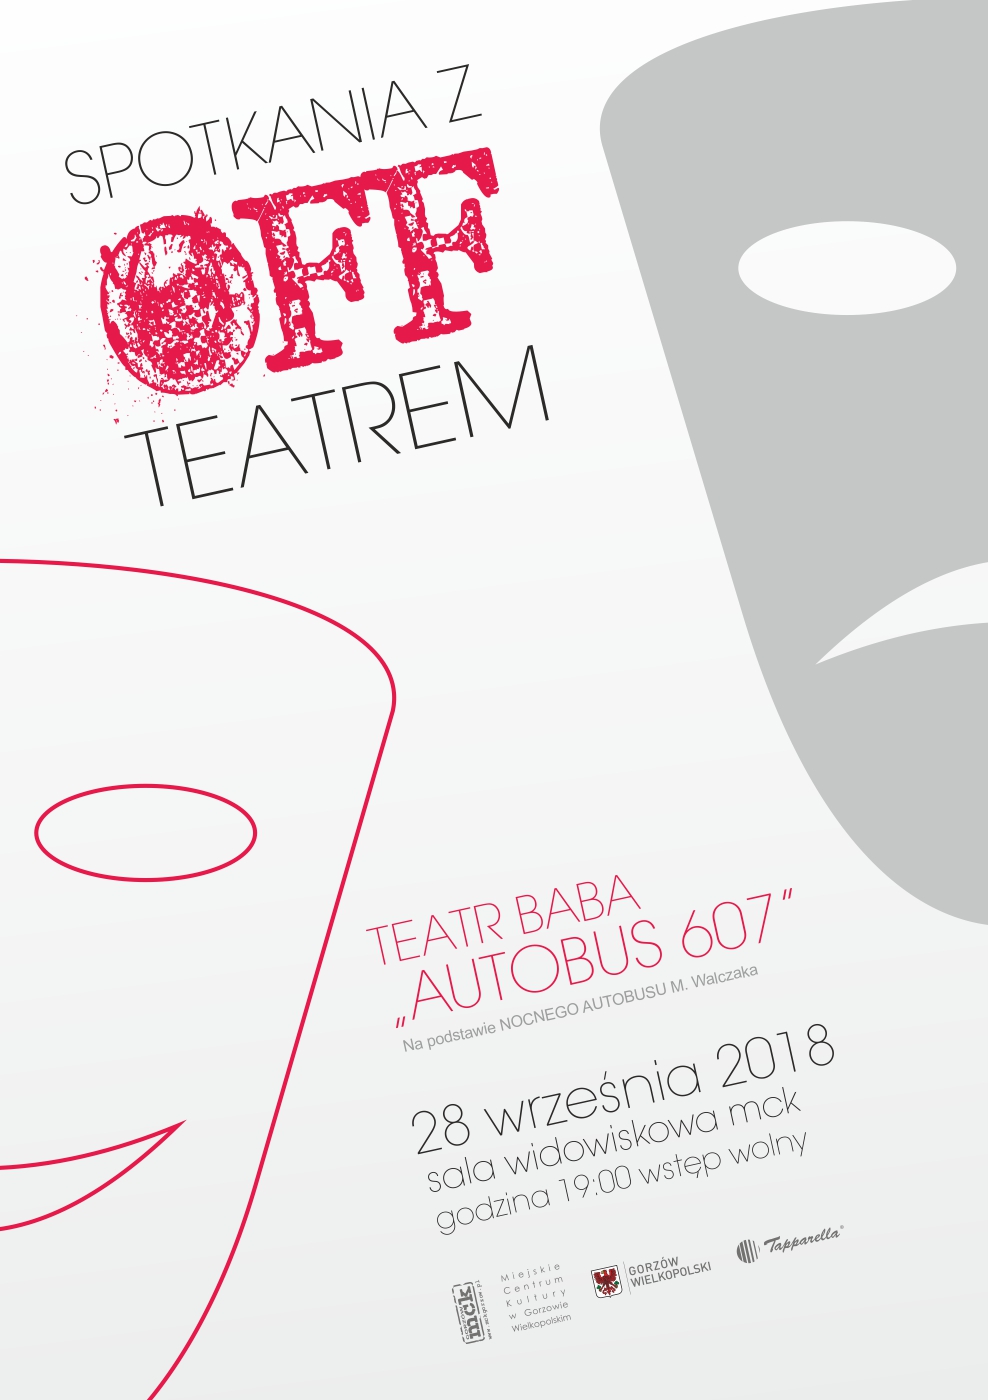 Grafika wpisu „Spotkania z Offteatrem” – Teatr BABA